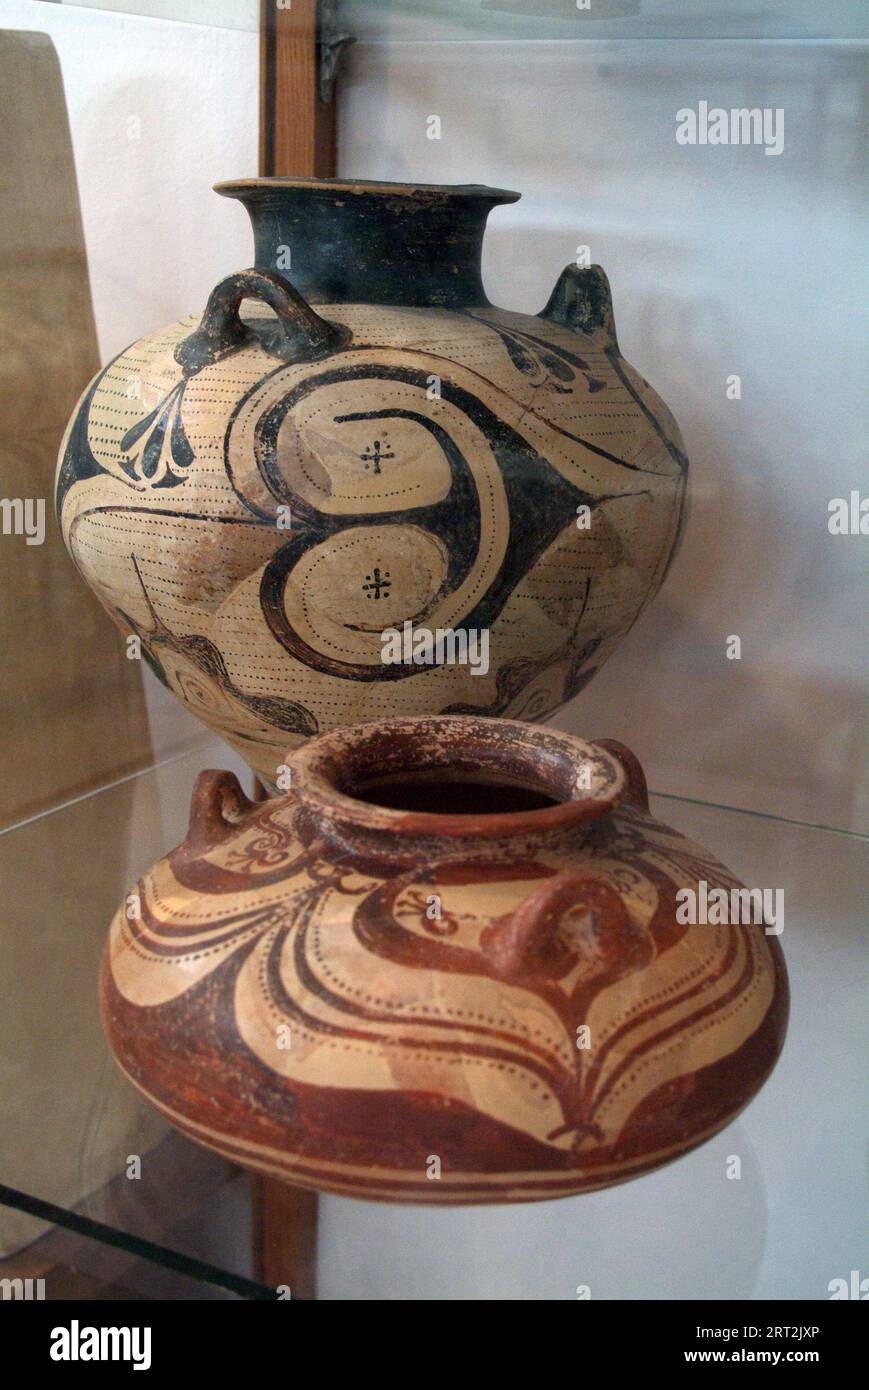 Antichi vasi micenei del 1500 a.C. circa, il Museo Archeologico di Tebe, che raffigura la storia di Tebe dal Neolitico all'Ottamano, Thiva, Grecia, 2003. Foto Stock